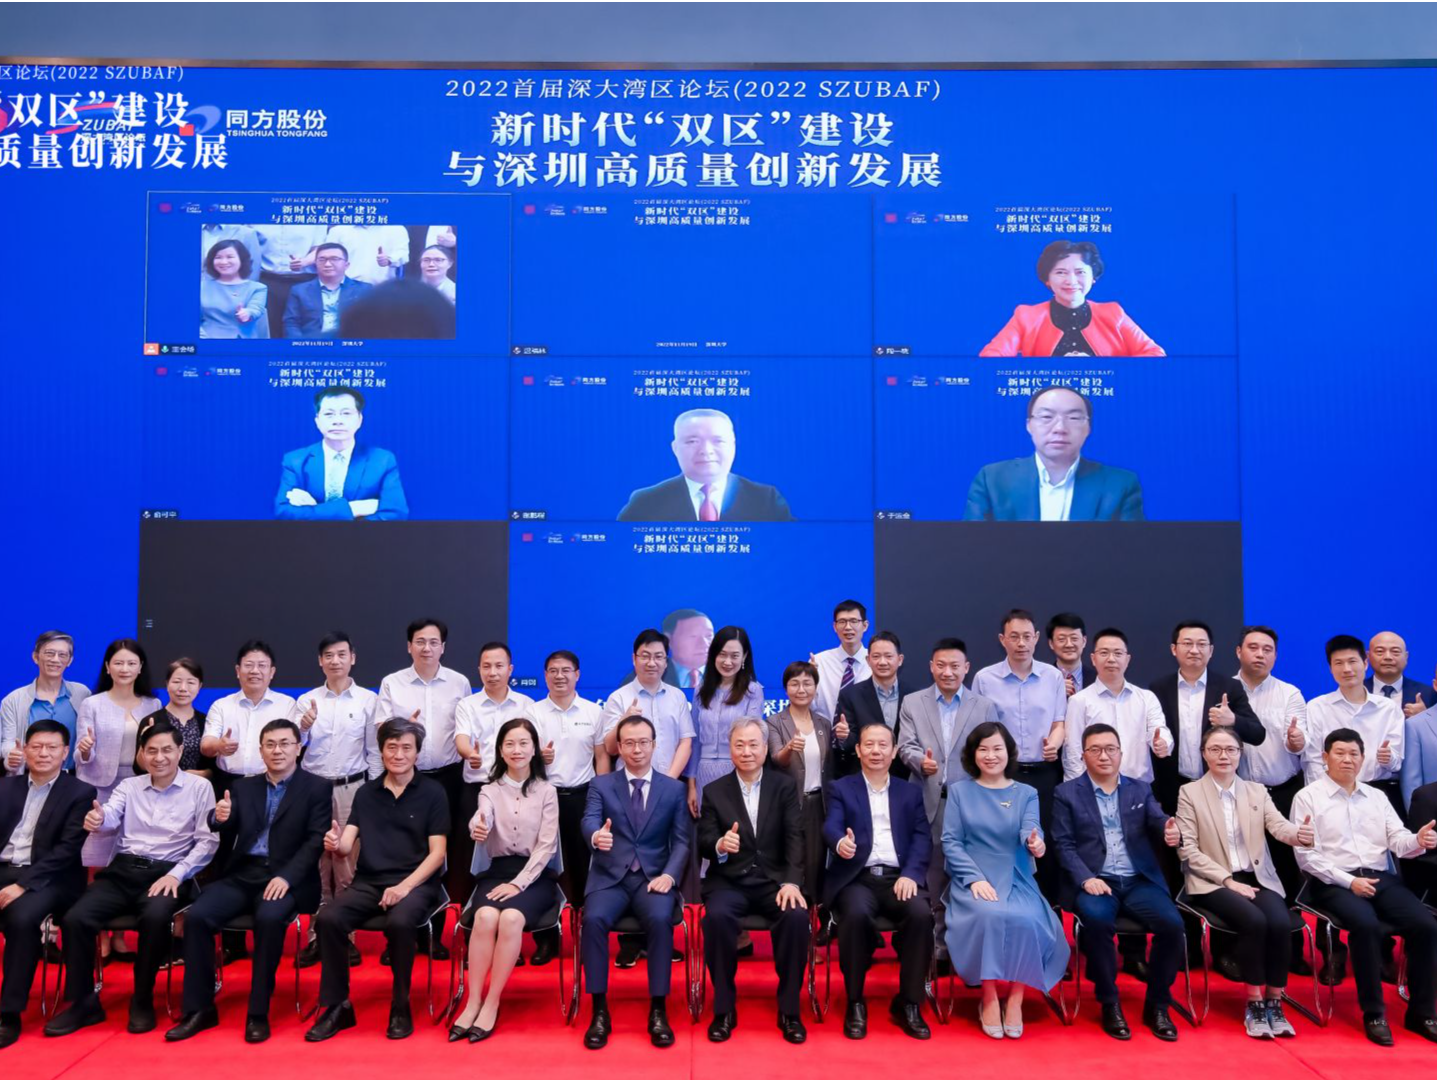  2022首届深大湾区论坛在深圳大学举行